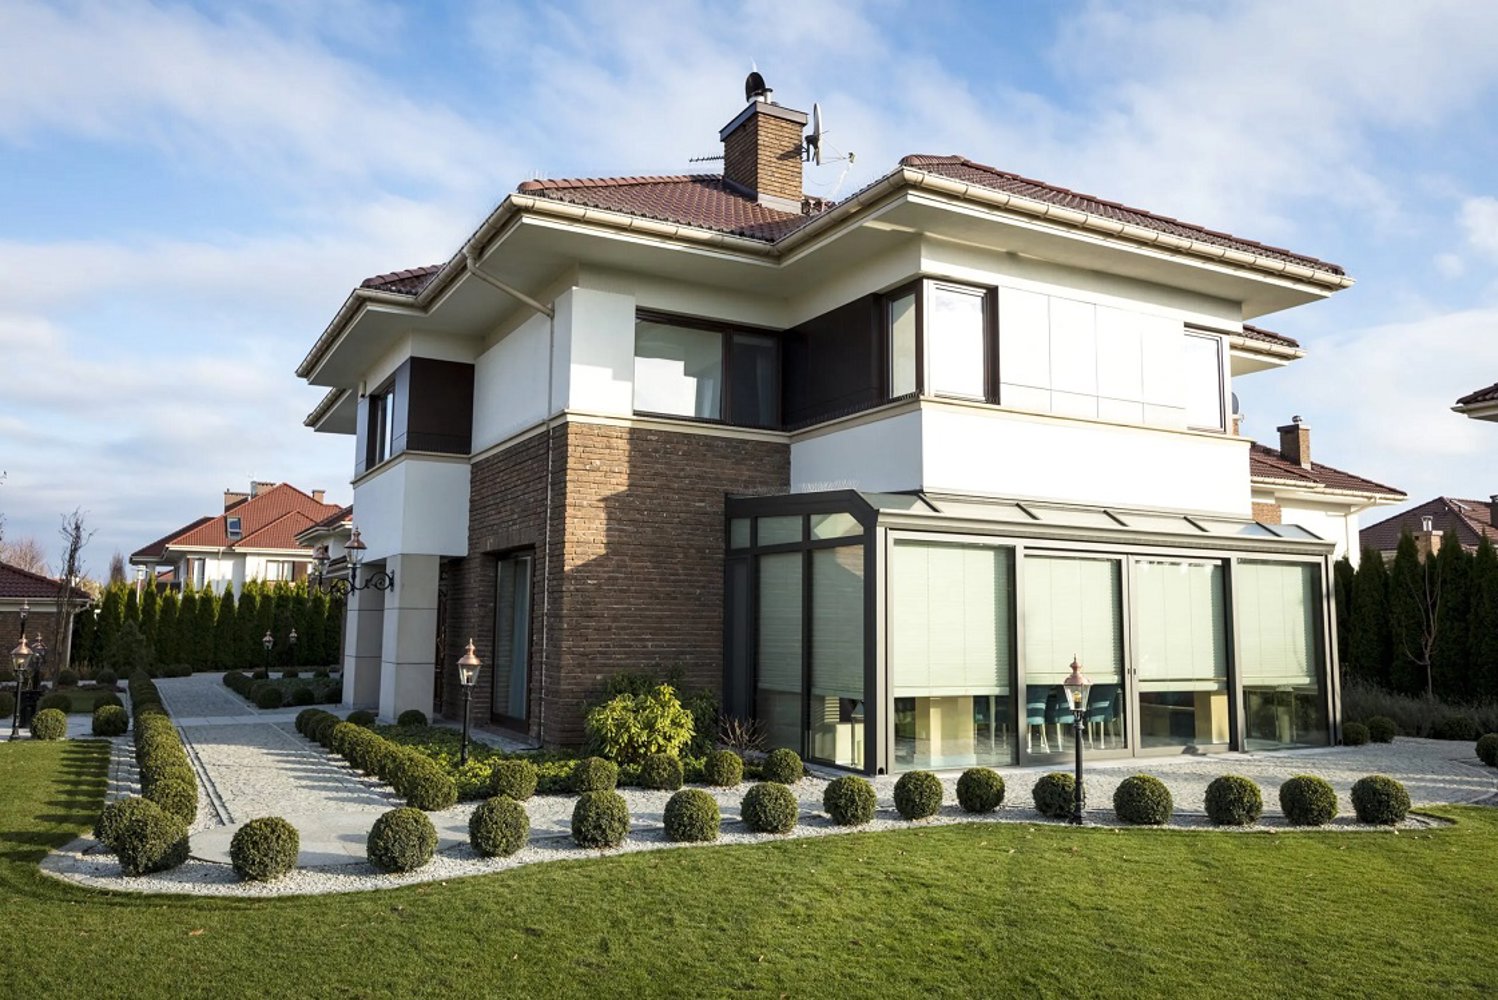 Budujesz dom lub kupujesz mieszkanie? Zwróć uwagę na rozmieszczenie okien.